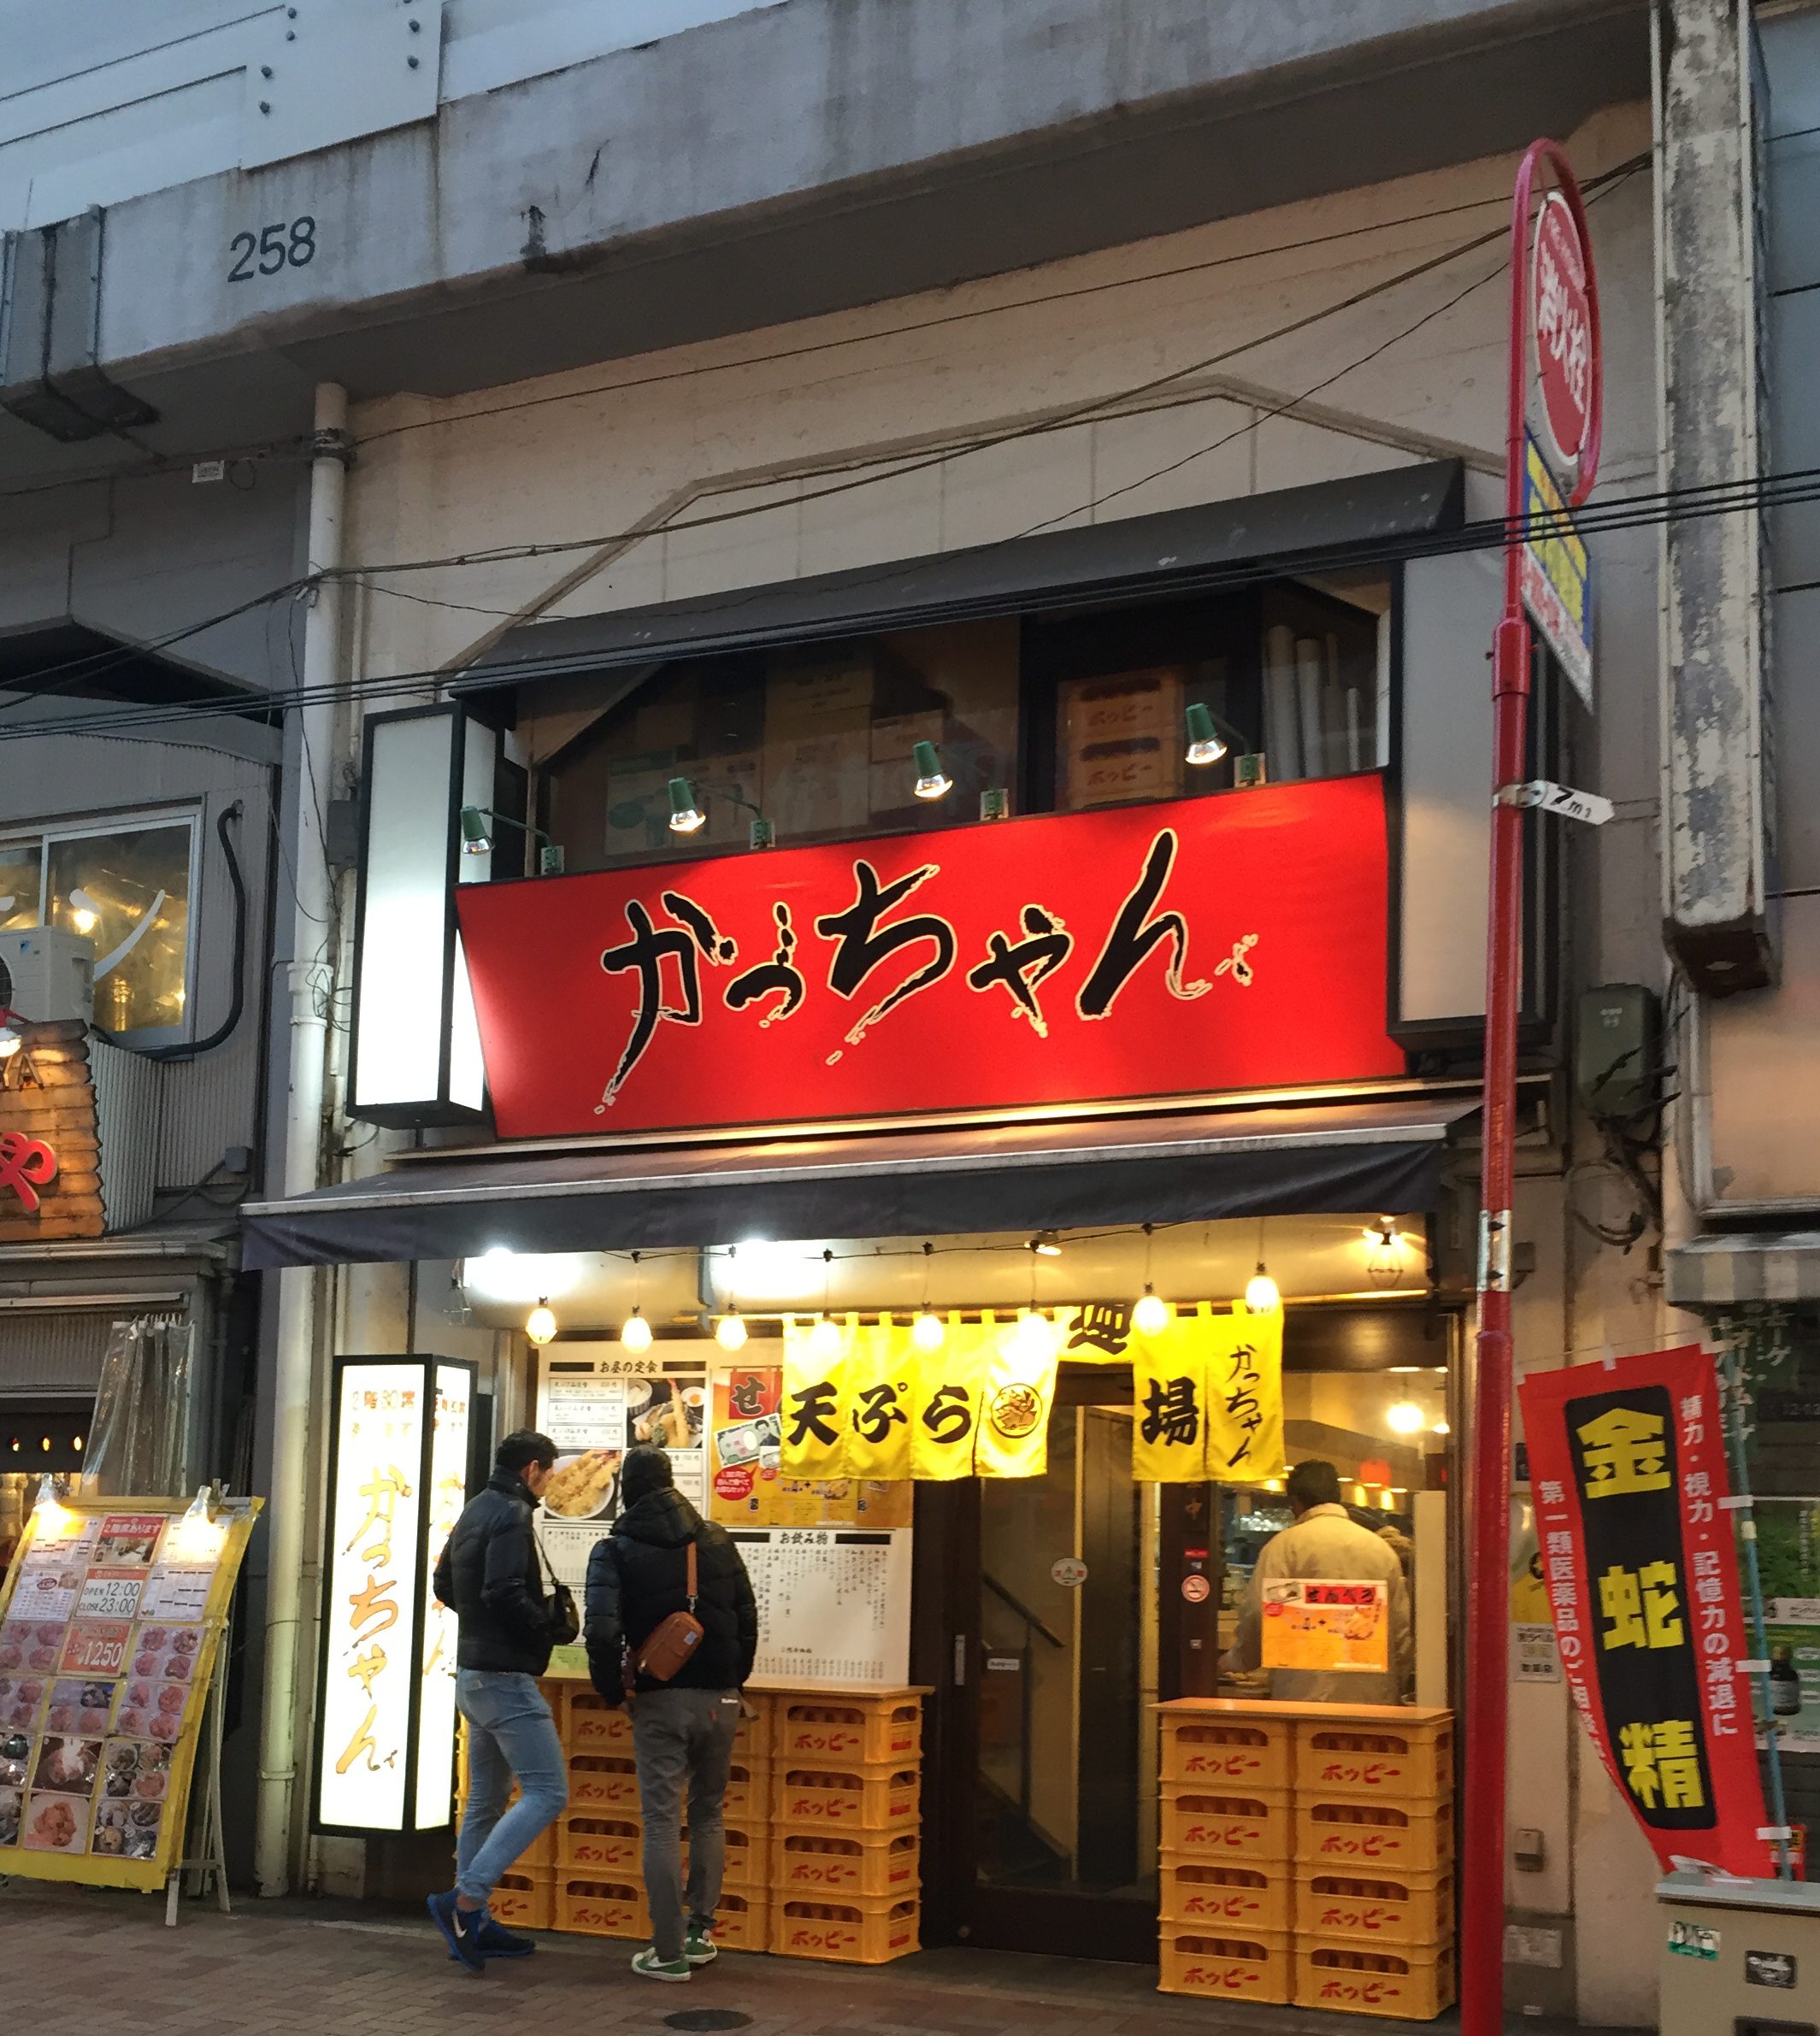 立ち飲み屋探訪 上野駅 かっちゃん お得な せんべろセット もある コスパ最高な天ぷら専門店の立ち呑み 単騎でサバイバル